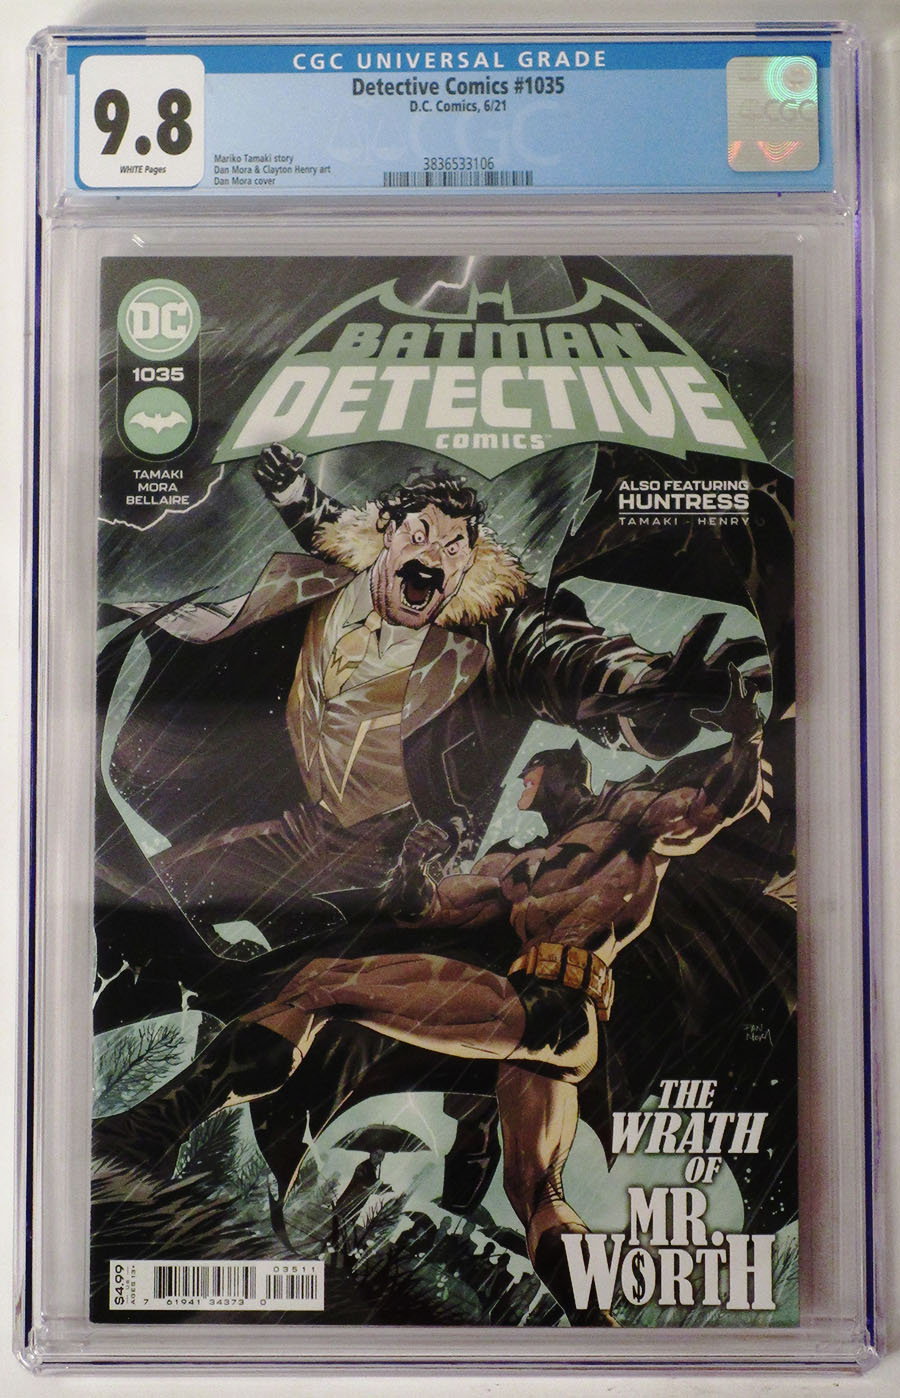 Detective Comics Vol 2 #1035 Cover C DF CGC Graded 9.8